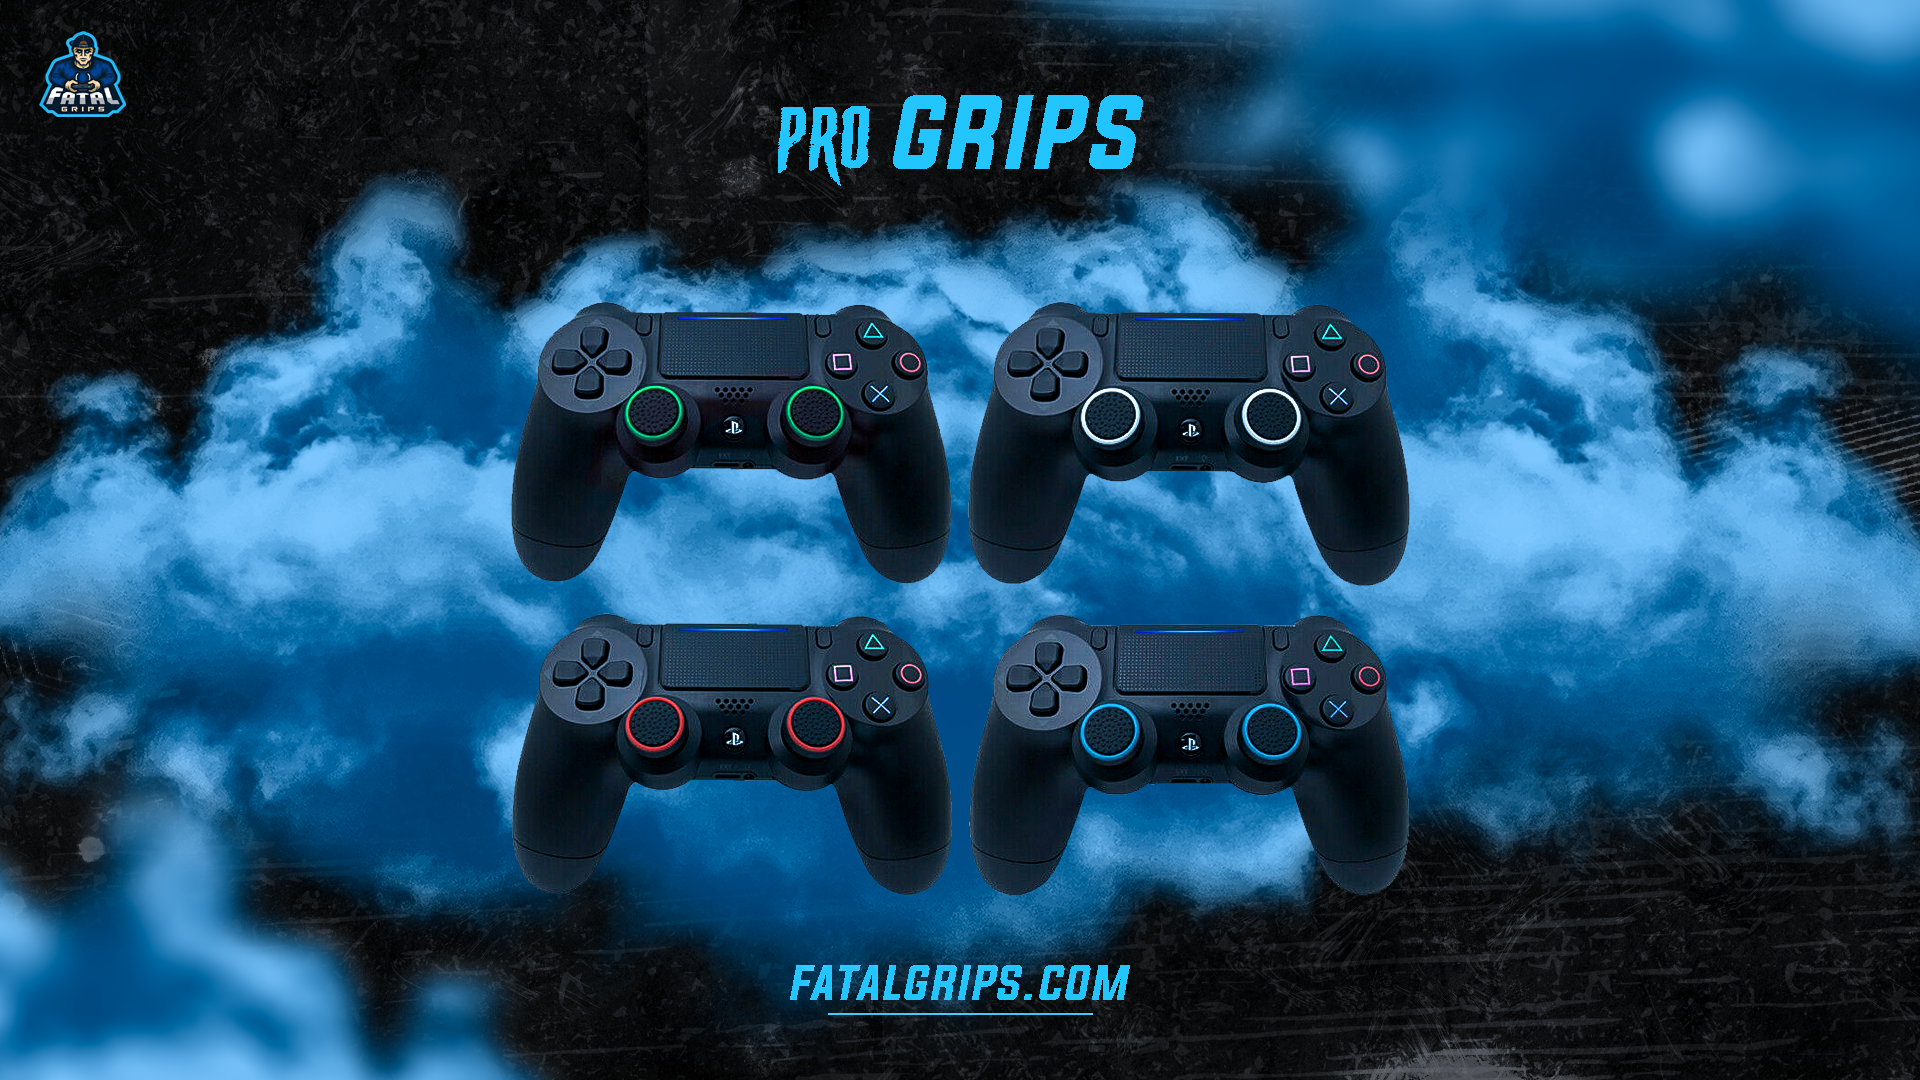 Pro Grips - Fatal Grips